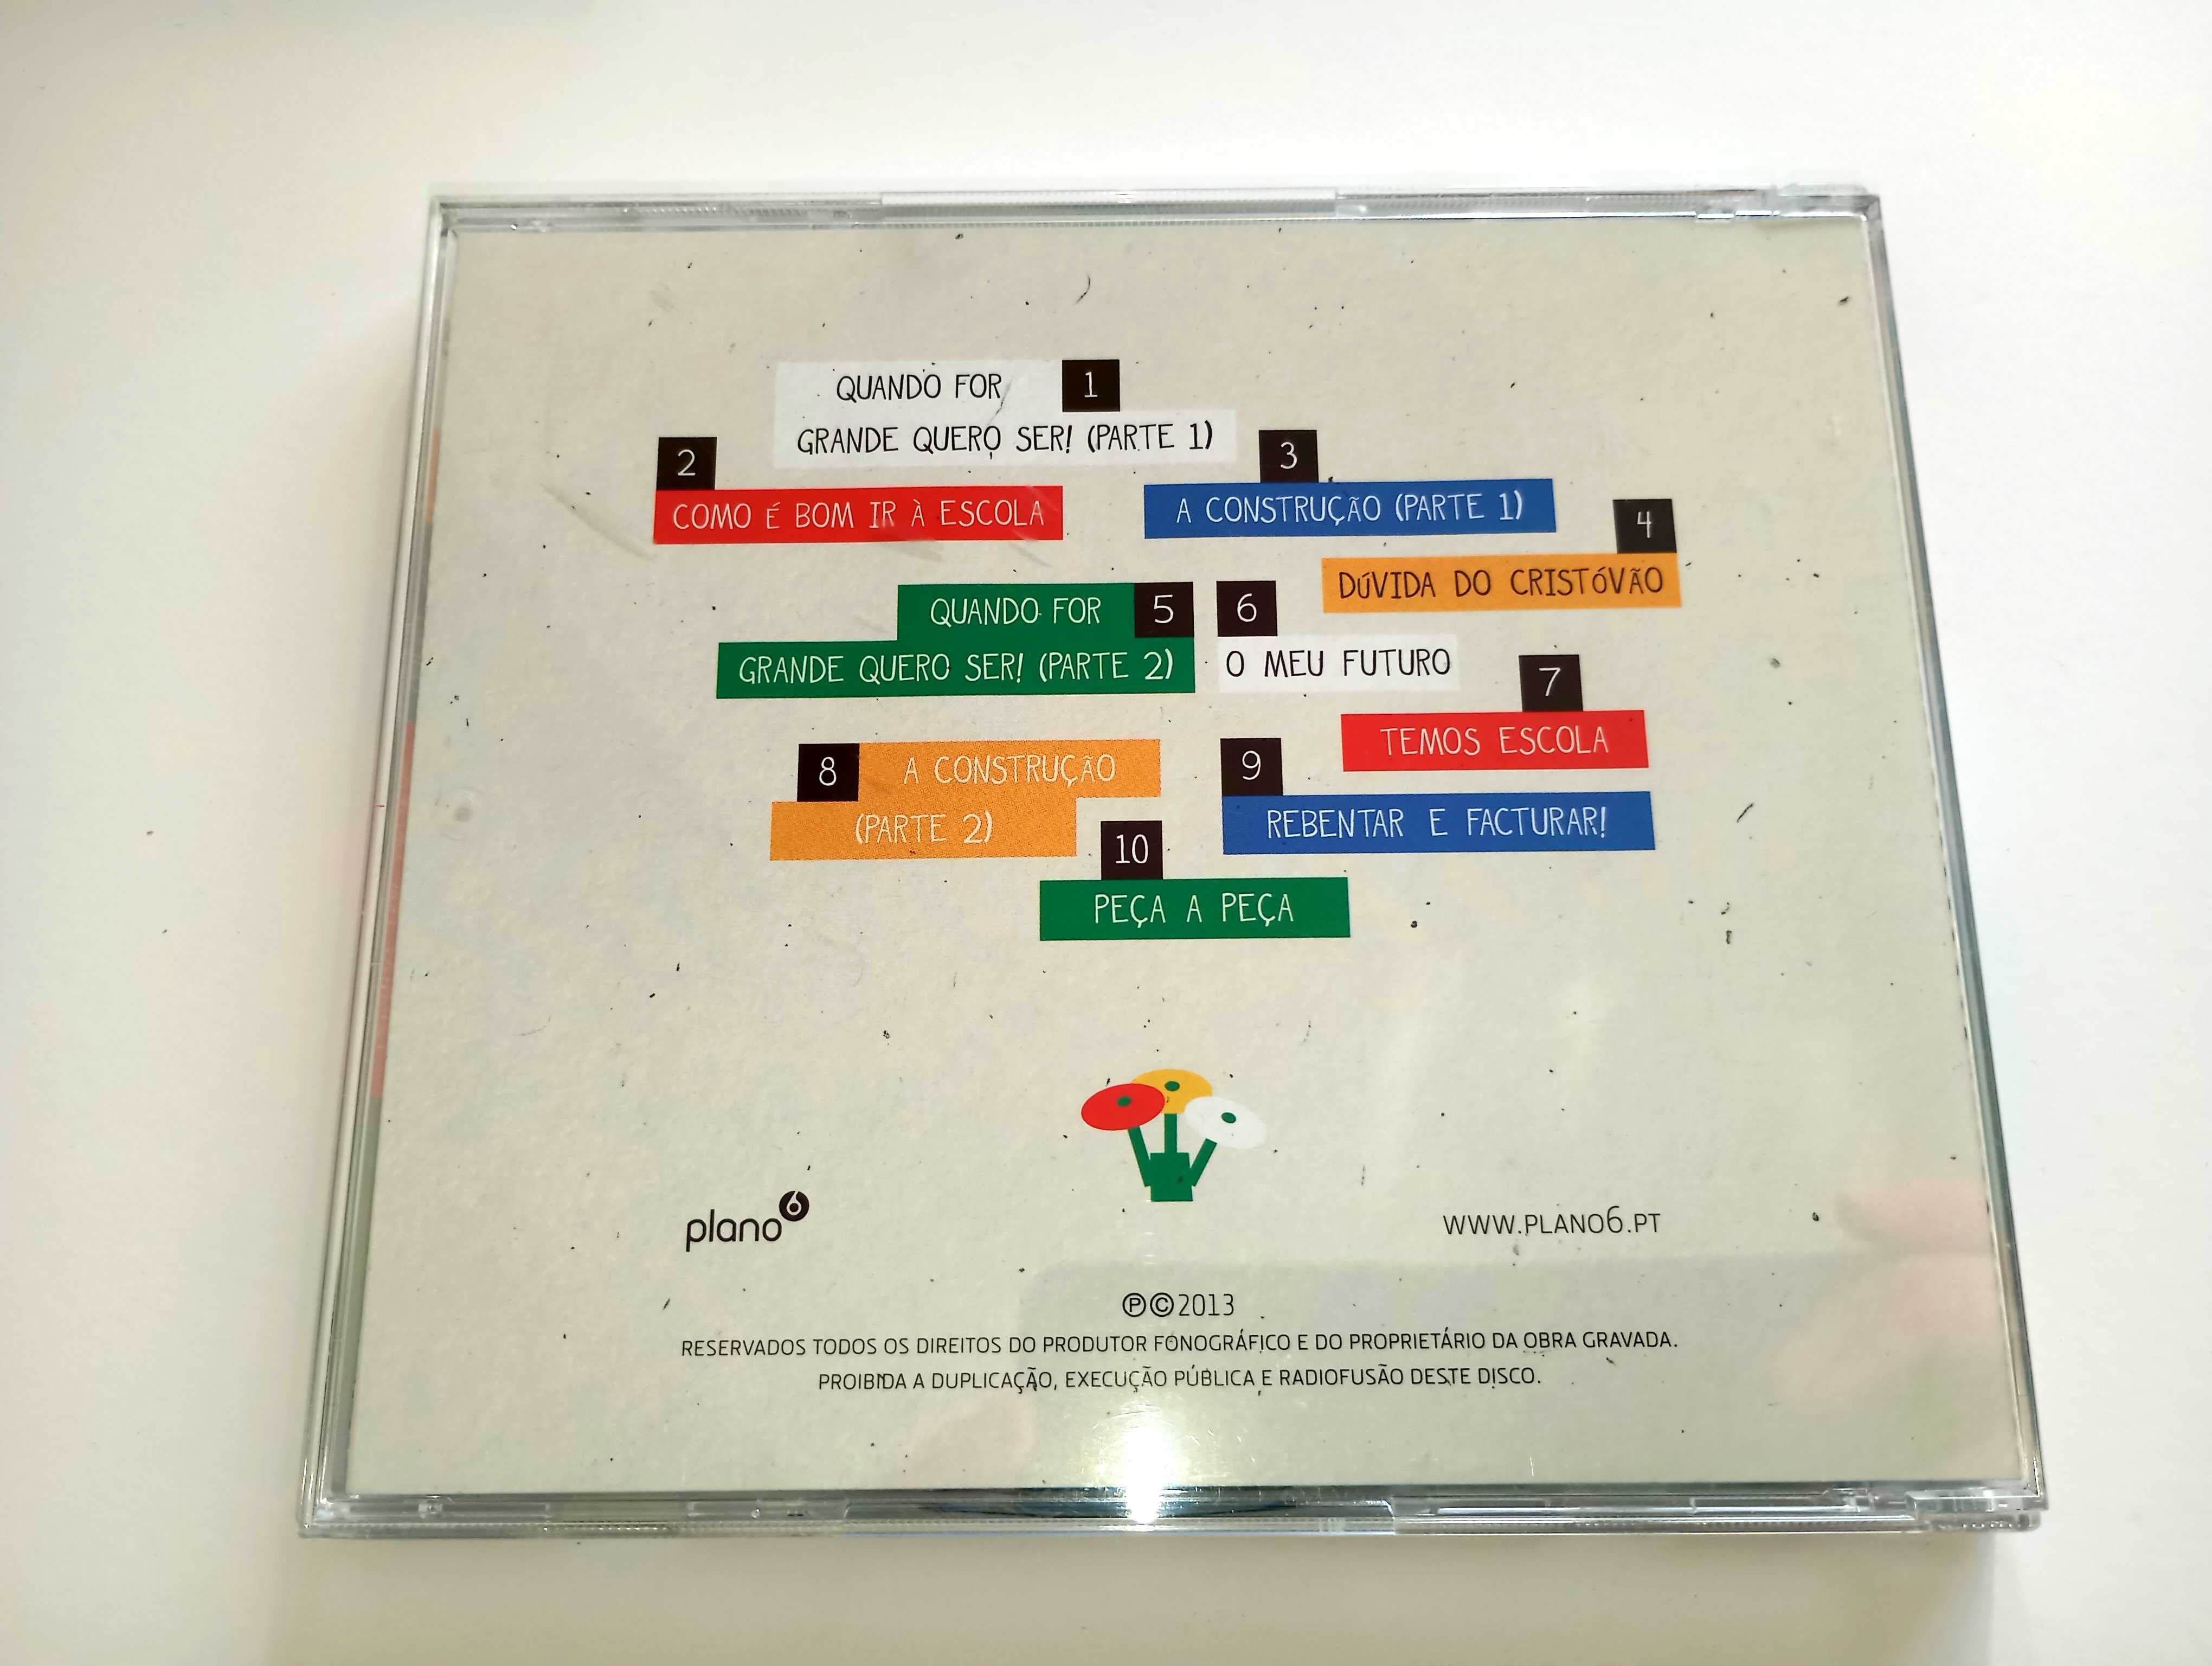 CD Original - Quando for grande...quero ser: